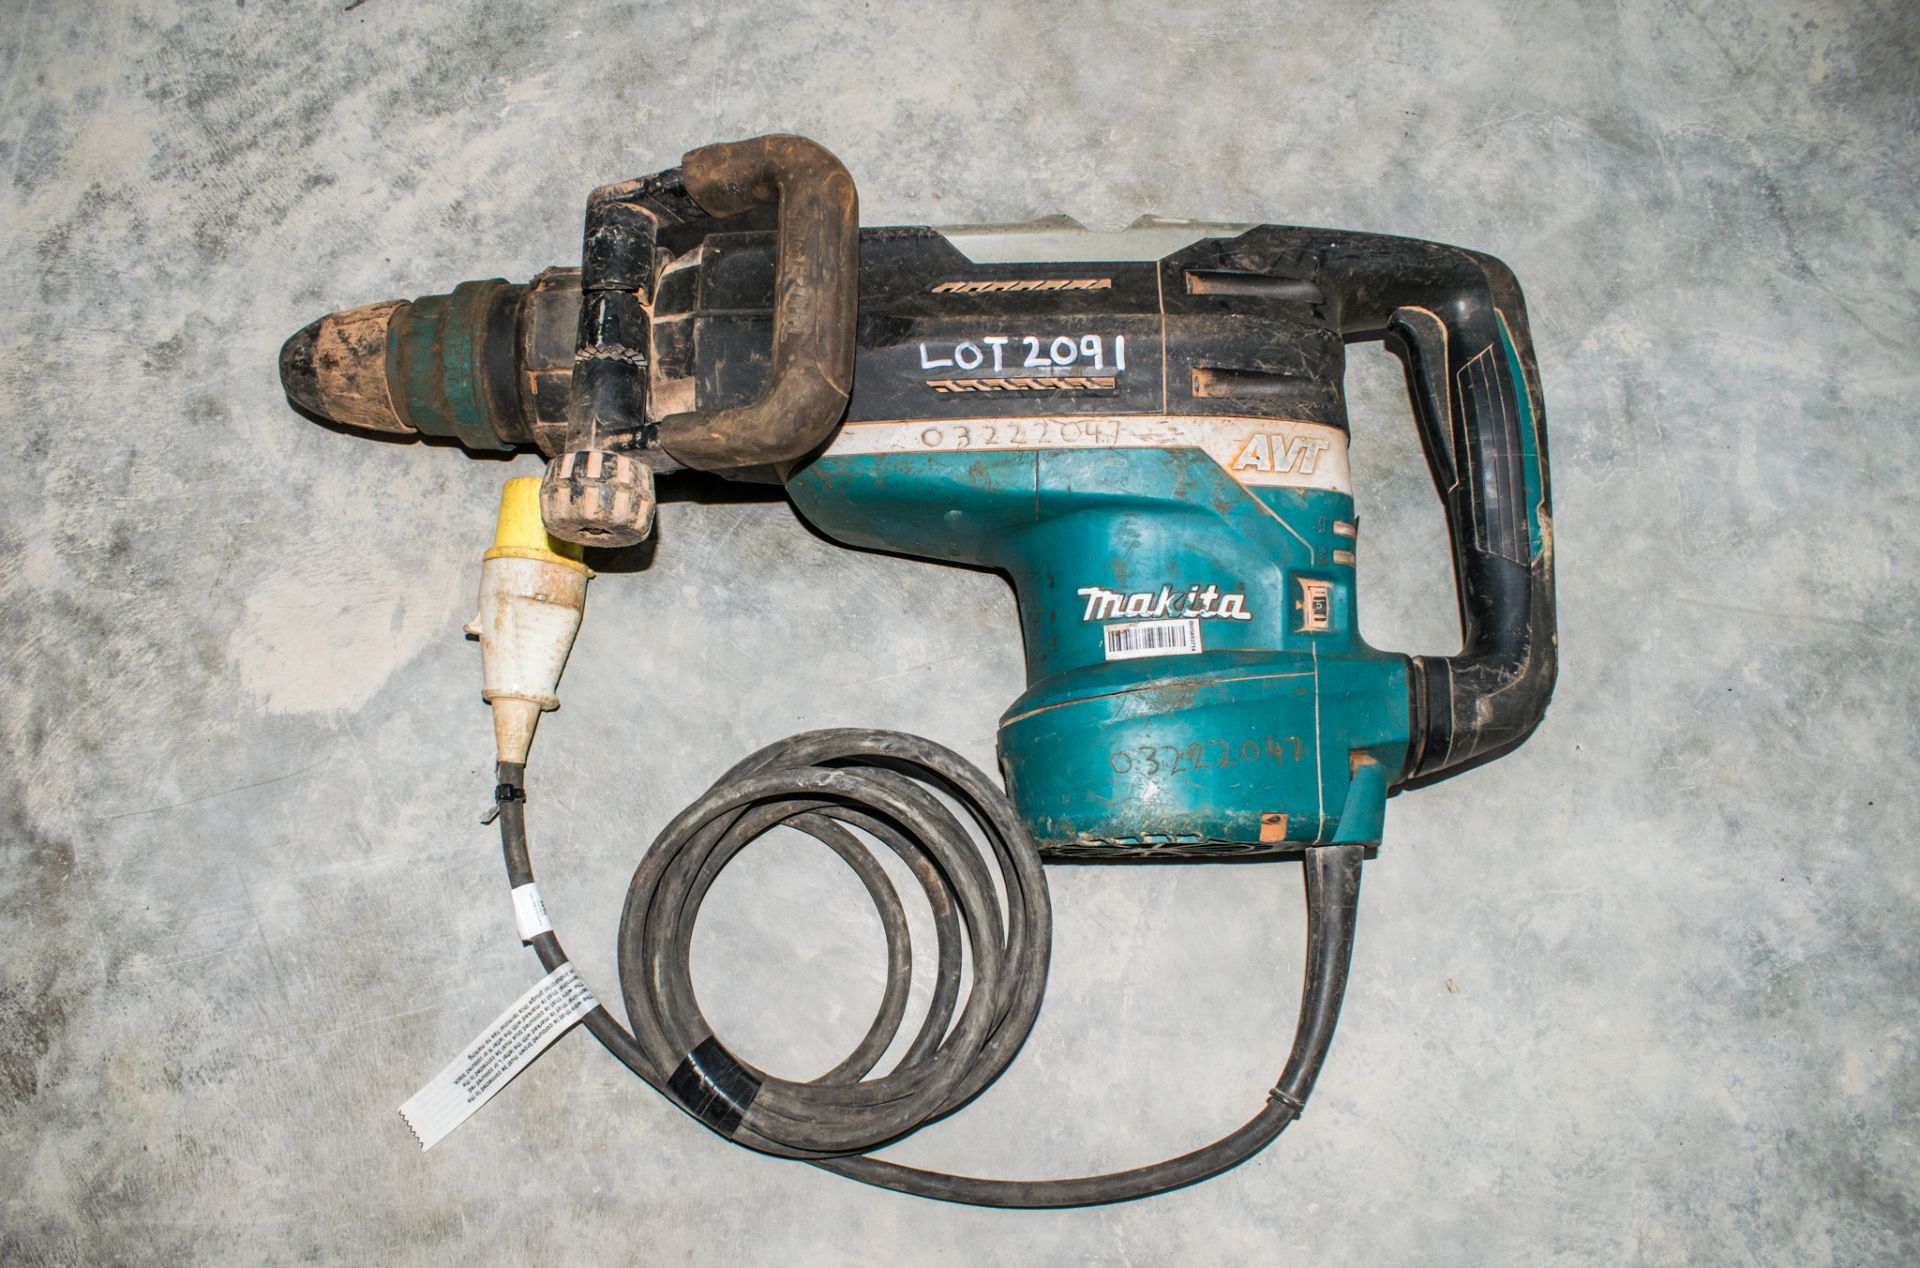 Makita HR5212C 110v SDS rotary hammer drill